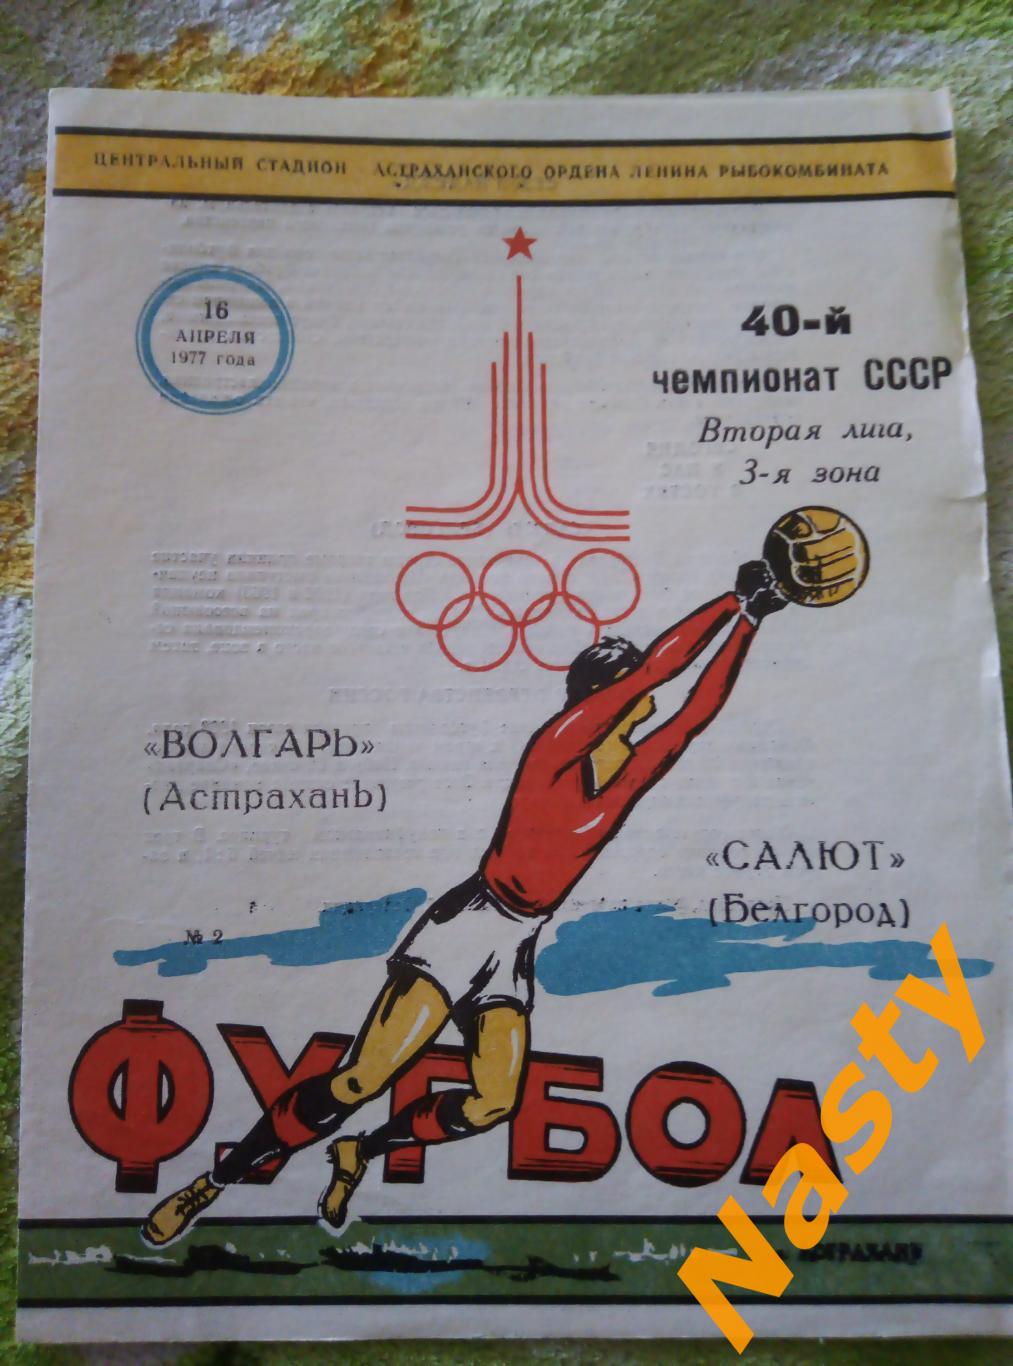 Волгарь (Астрахань)-Салют (Белгород) 2 лига 3 зона 16.04.1977 г.